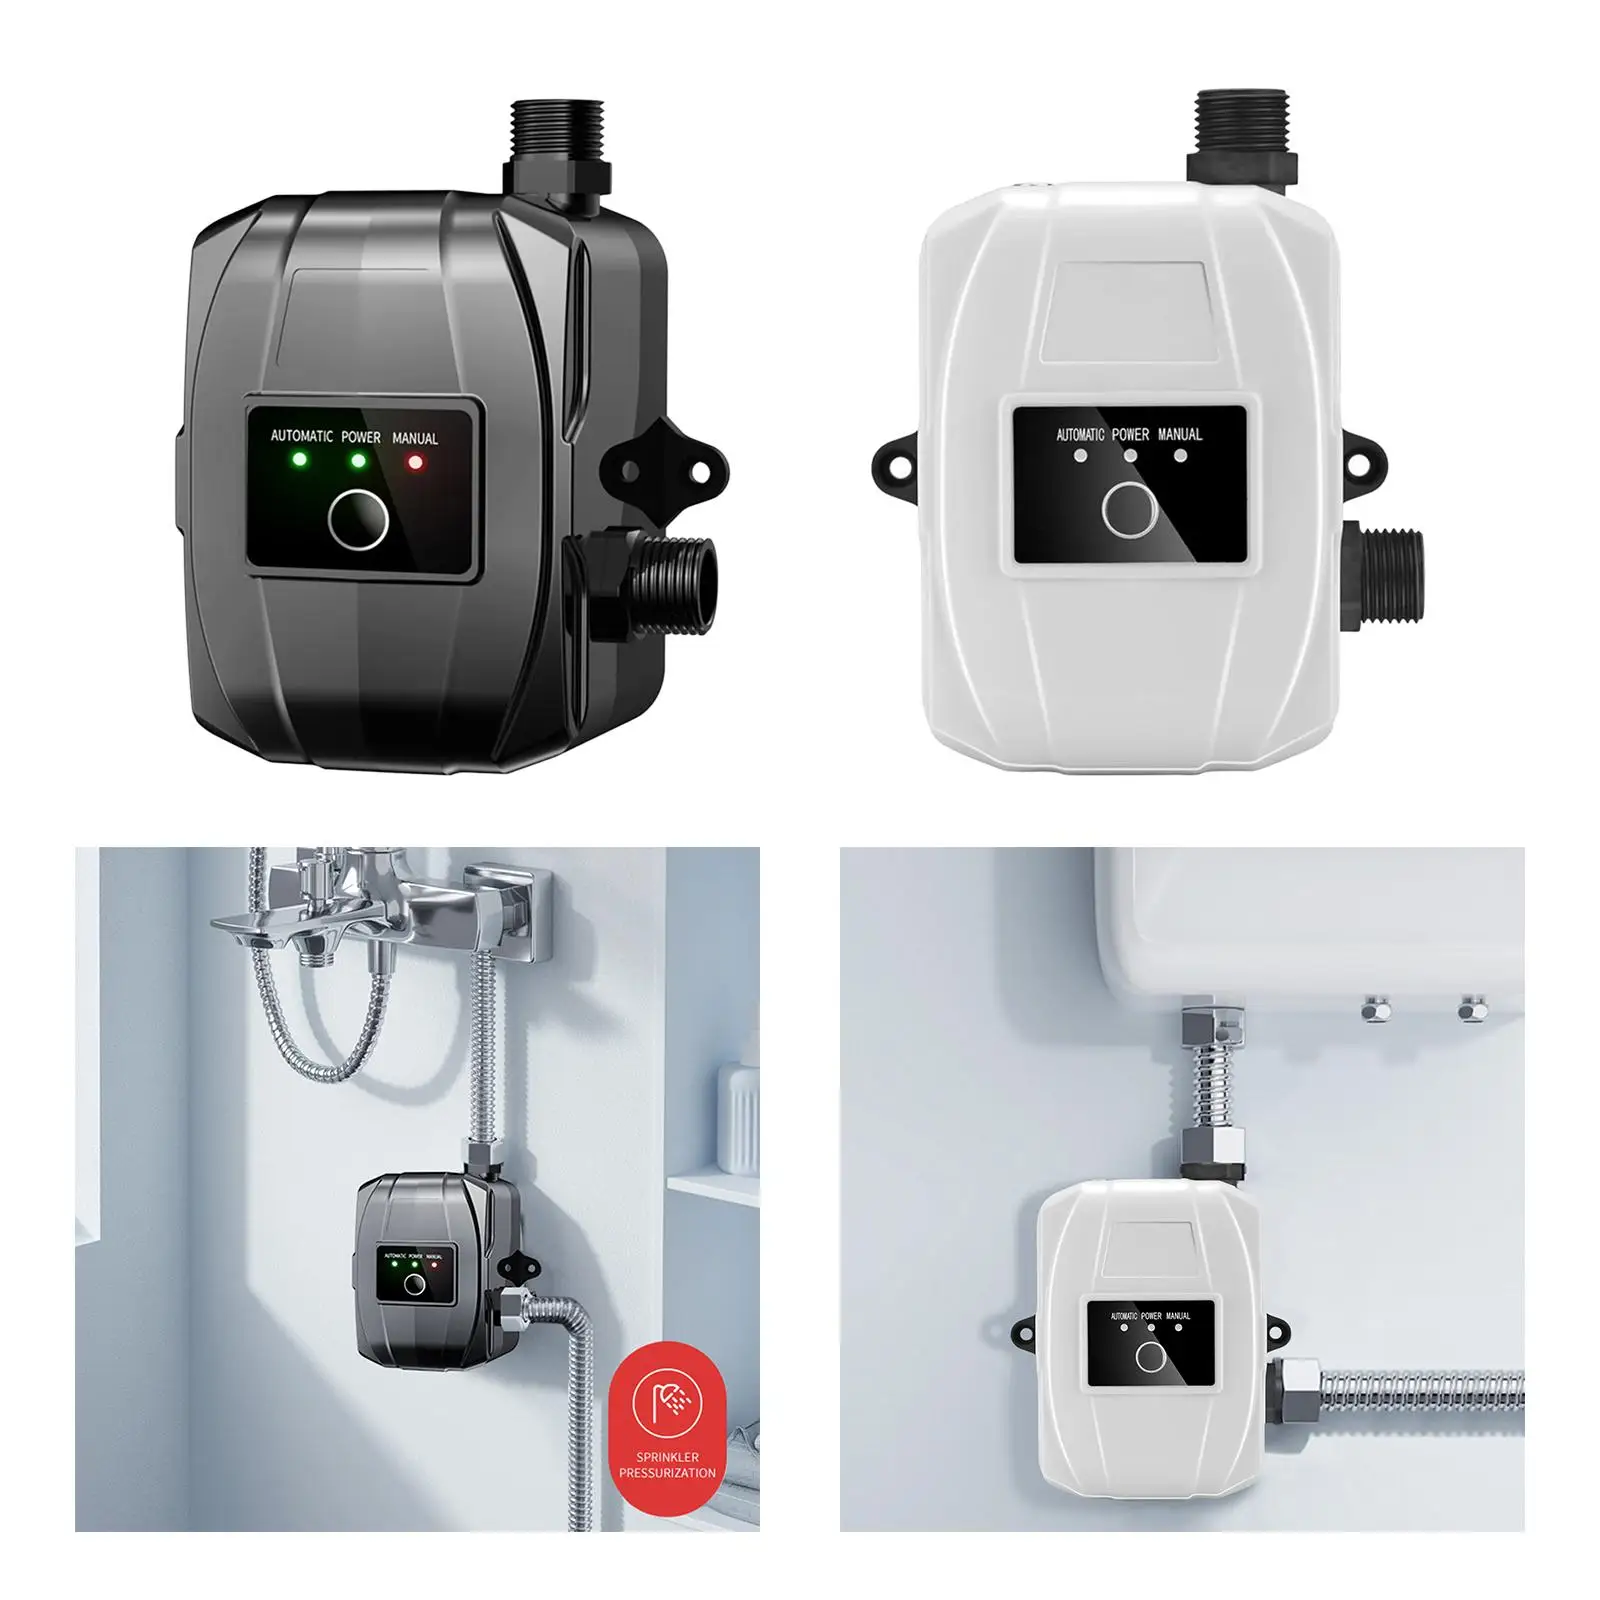 24V 150W Water Pressure Booster Pump Silent Water Pump Water Pressure Pumps for Shower Garden Kitchen Sink Household Bathroom